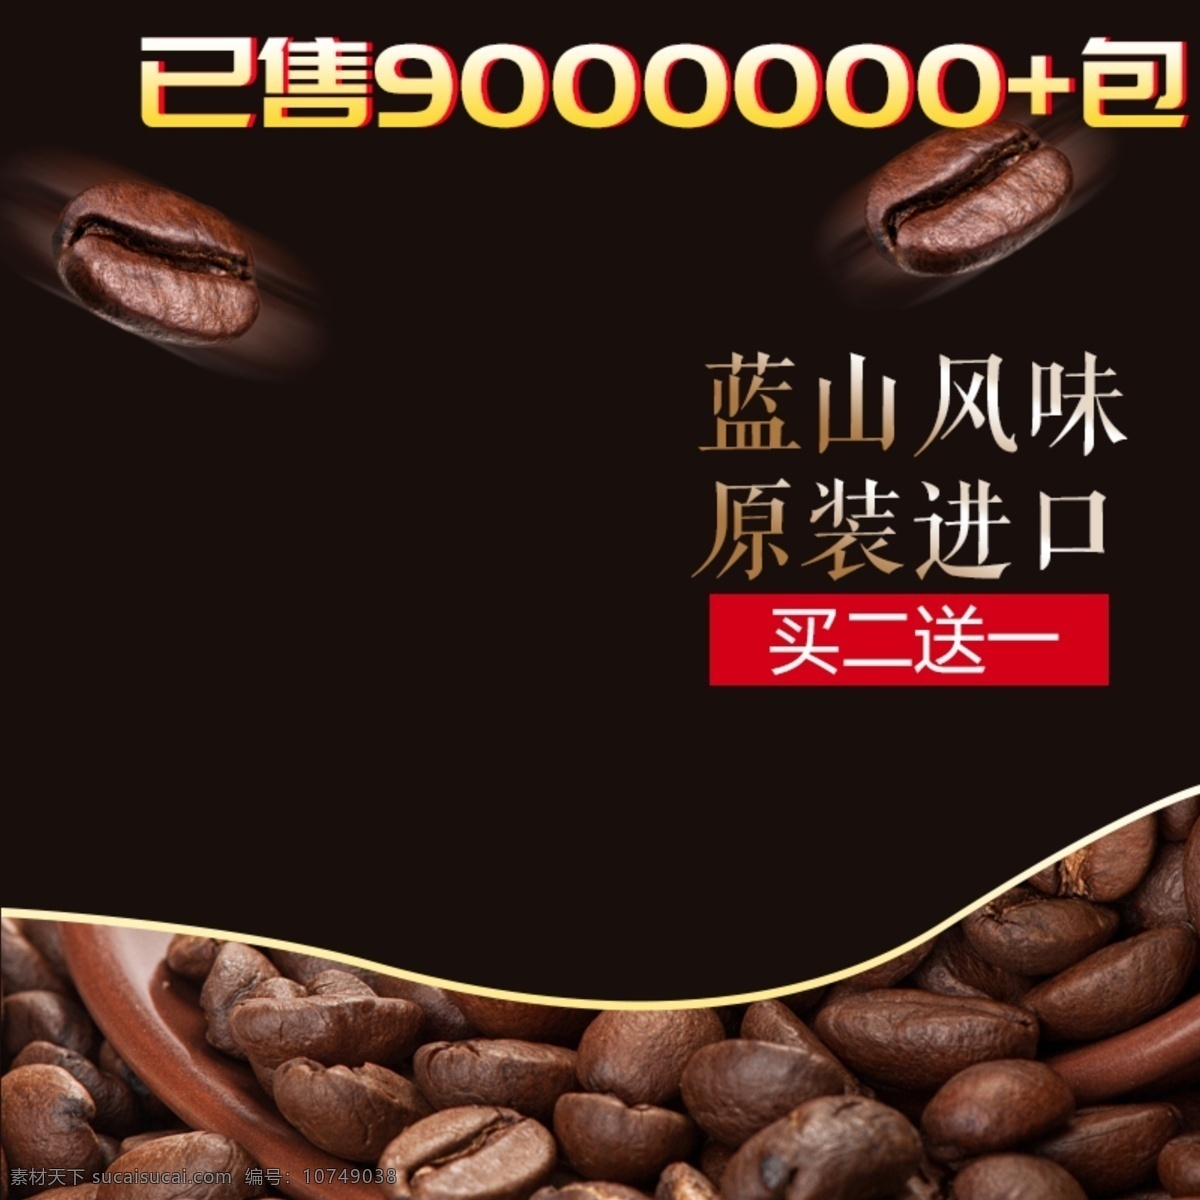 简洁 咖啡色 咖啡豆 主 图 直通车 主图 促销 散落咖啡豆 热卖